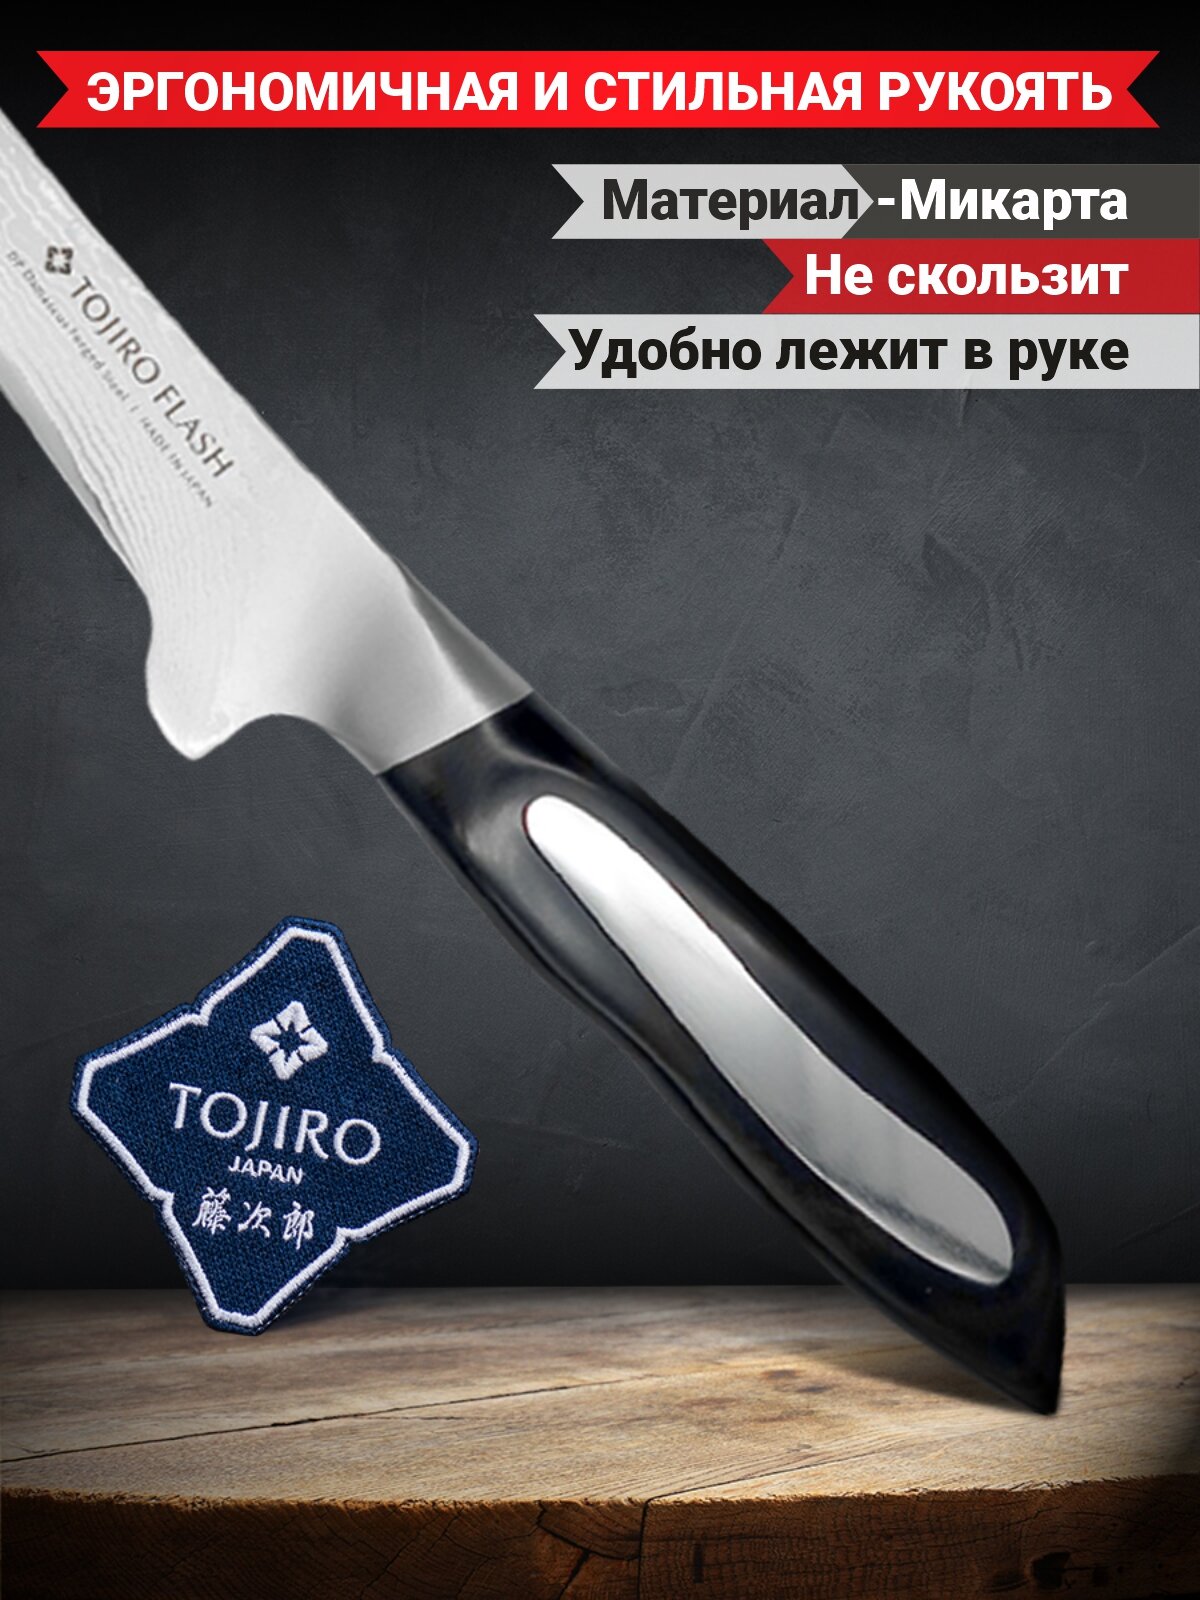 Нож филейный Tojiro Flash, 150 мм, сталь VG10, 63 слоя, рукоять микарта - фото №5